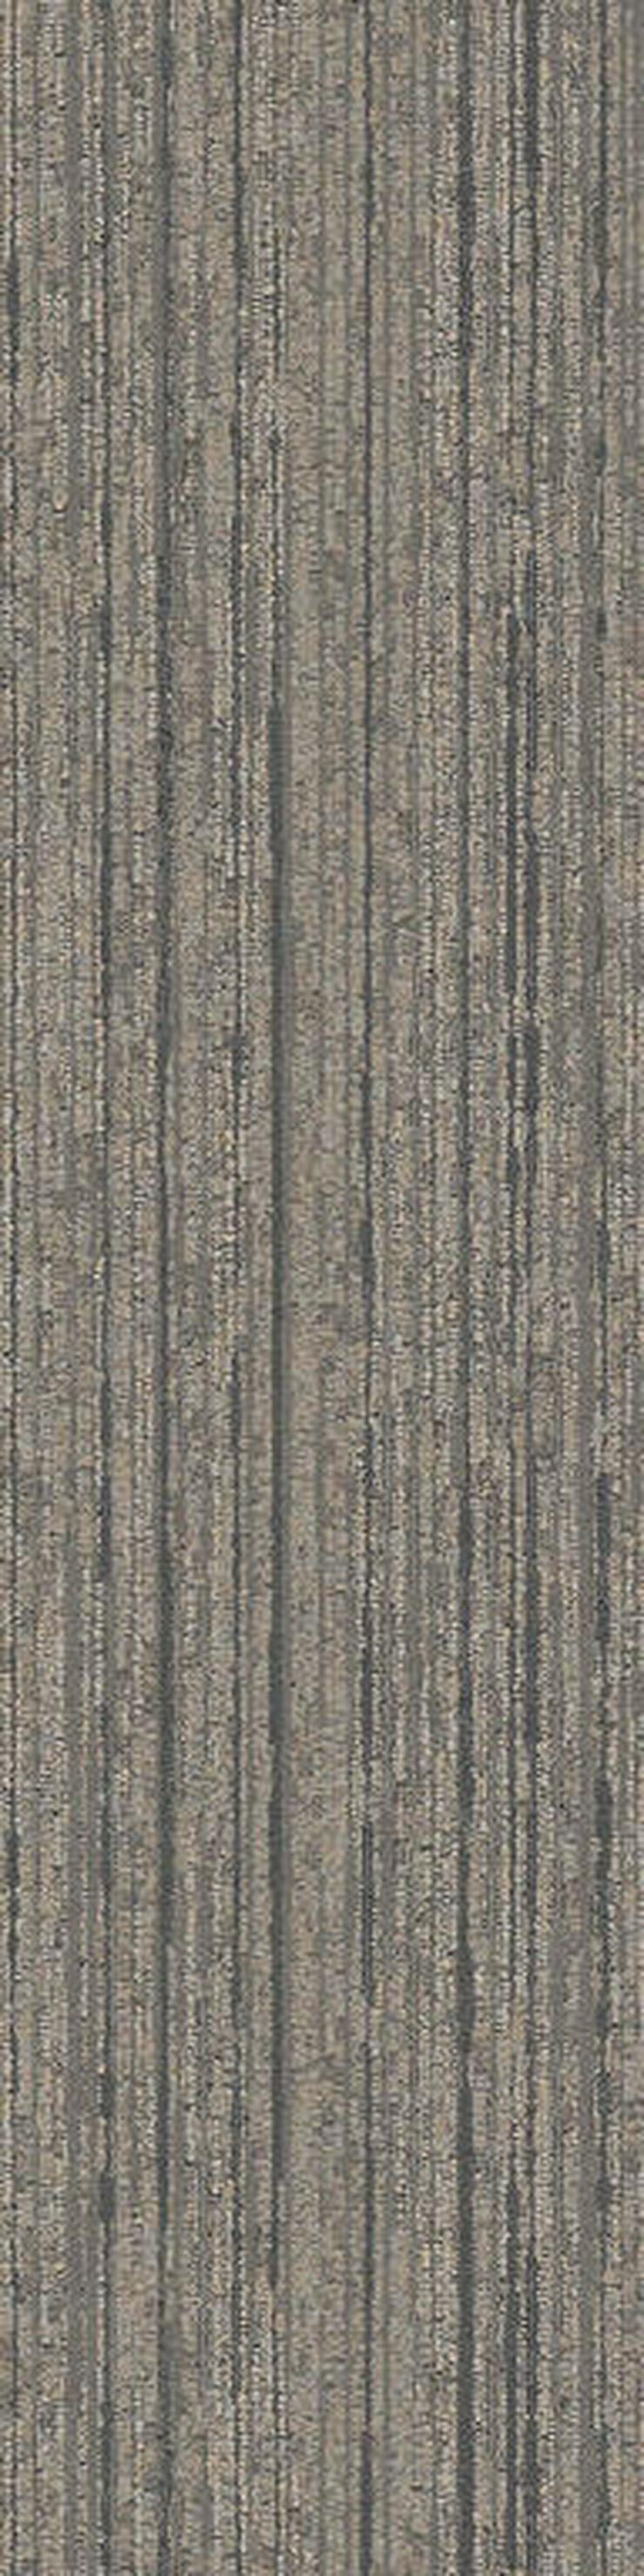 Schöne 25X100cm Teppichfliesen Mehrere Farben - Teppiche - Bild 7